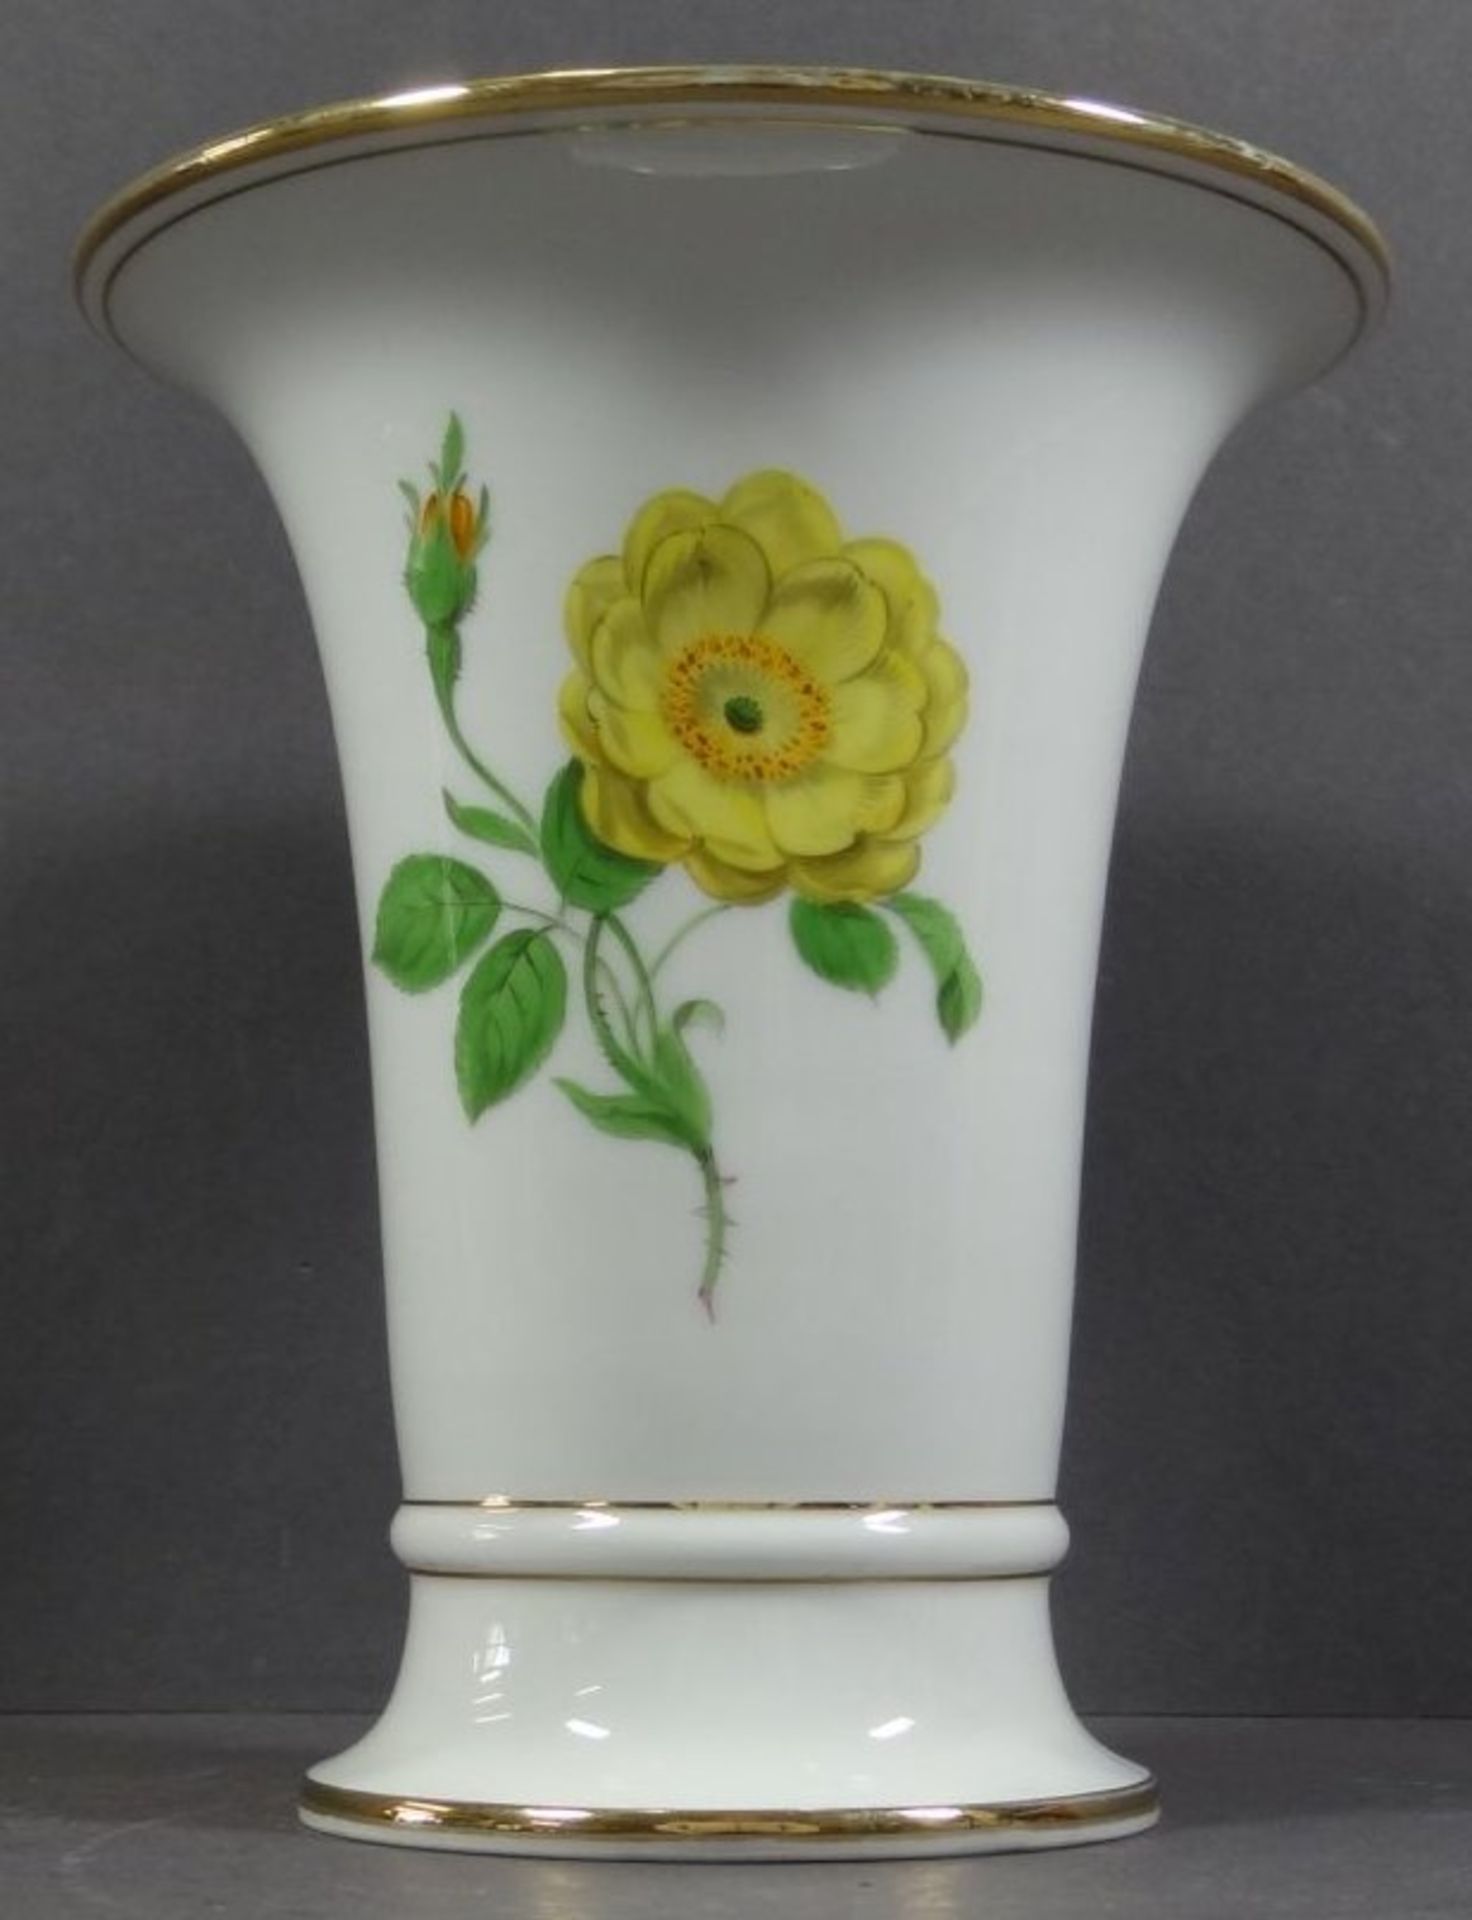 Trichtervase "Meissen" gelbe Rose, 1.Wahl, Goldrand etwas berieben, H-17 cm, D-14 cm - Bild 2 aus 5